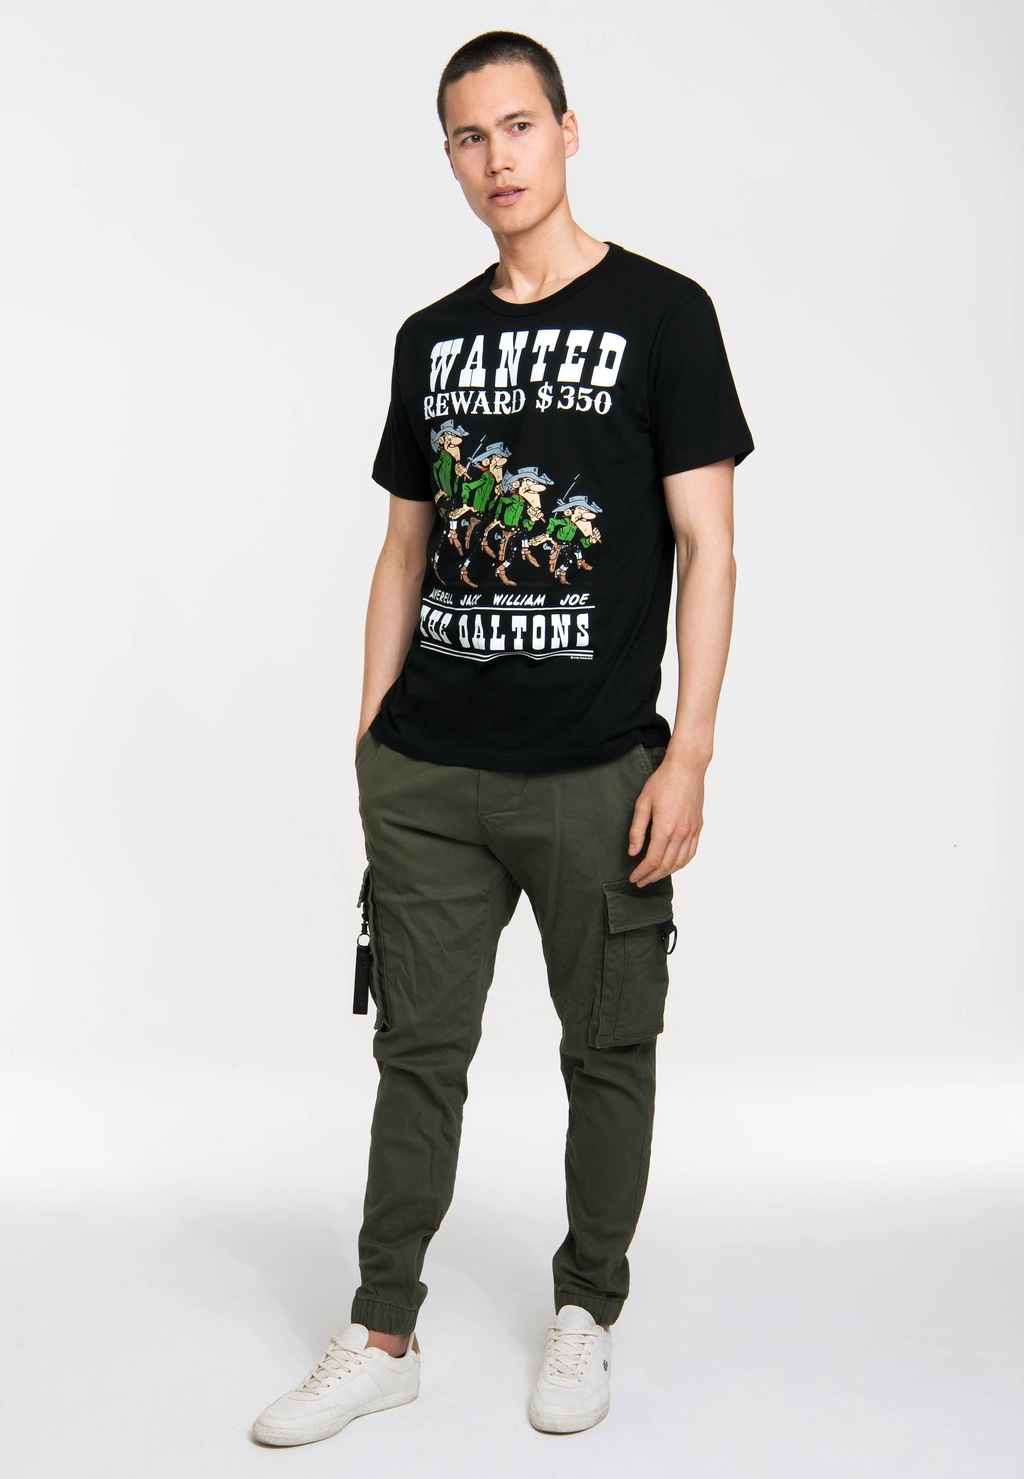 LOGOSHIRT T-Shirt "Lucky Luke - The Daltons - Wanted", mit coolem Retro-Dru günstig online kaufen